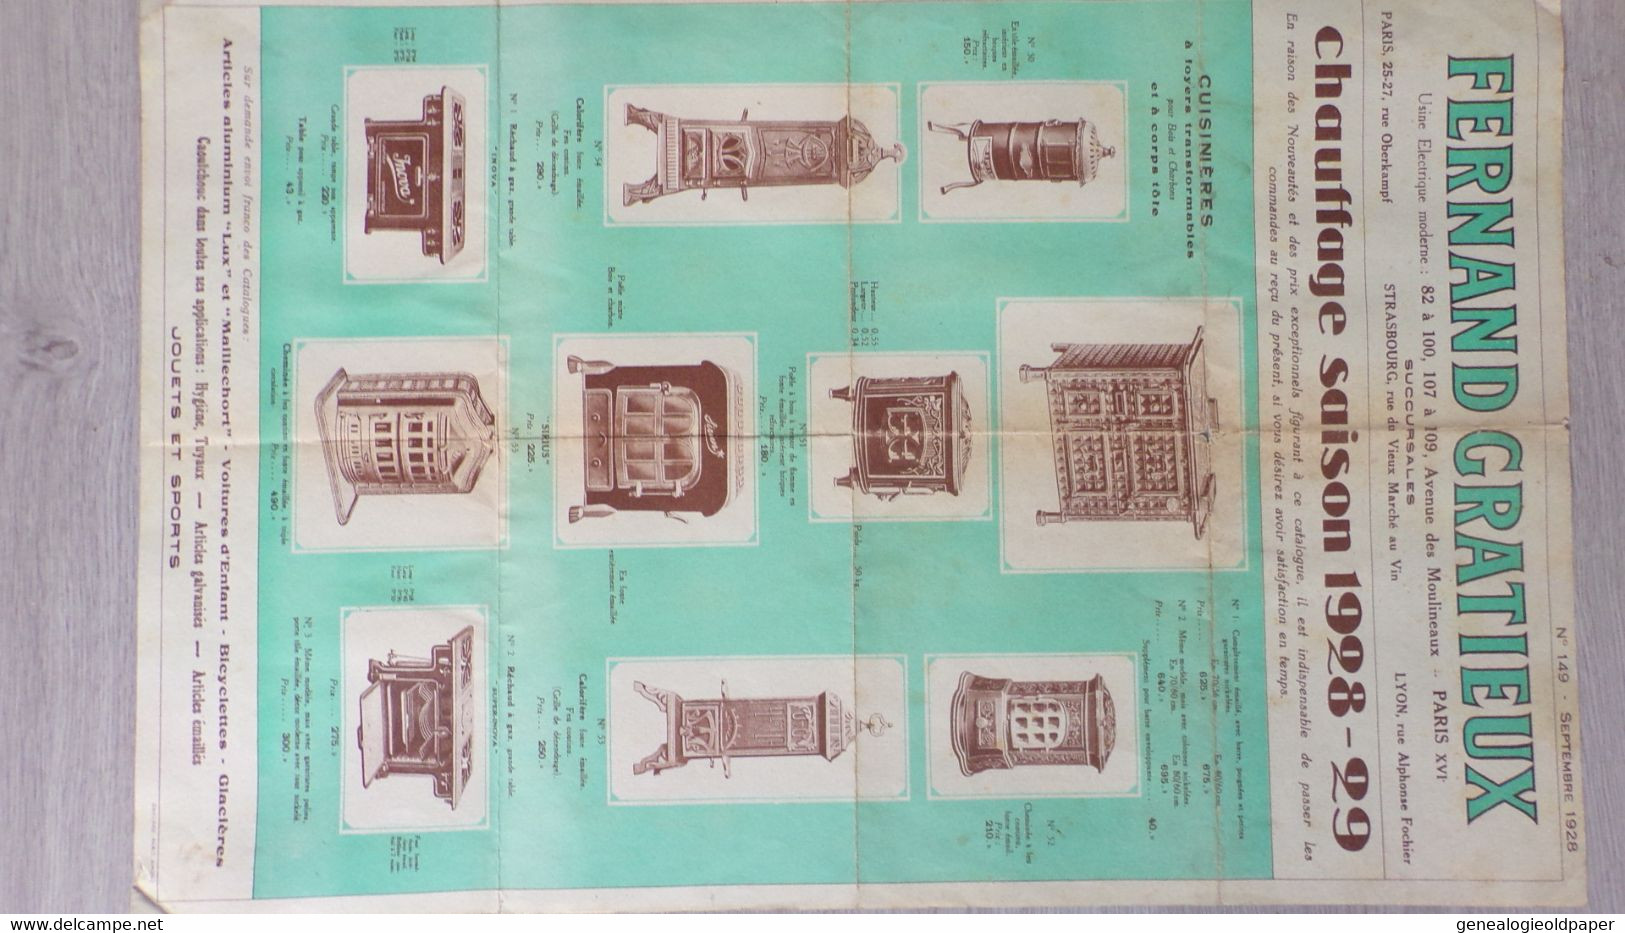 75-PARIS-67-STRASBOURG-69-LYON-AFFICHE PUBLICITE FERNAND GRATIEUX CHAUFFAGE 1928-1929-JOUET-CALORIFERE-POUSSETTE - Posters